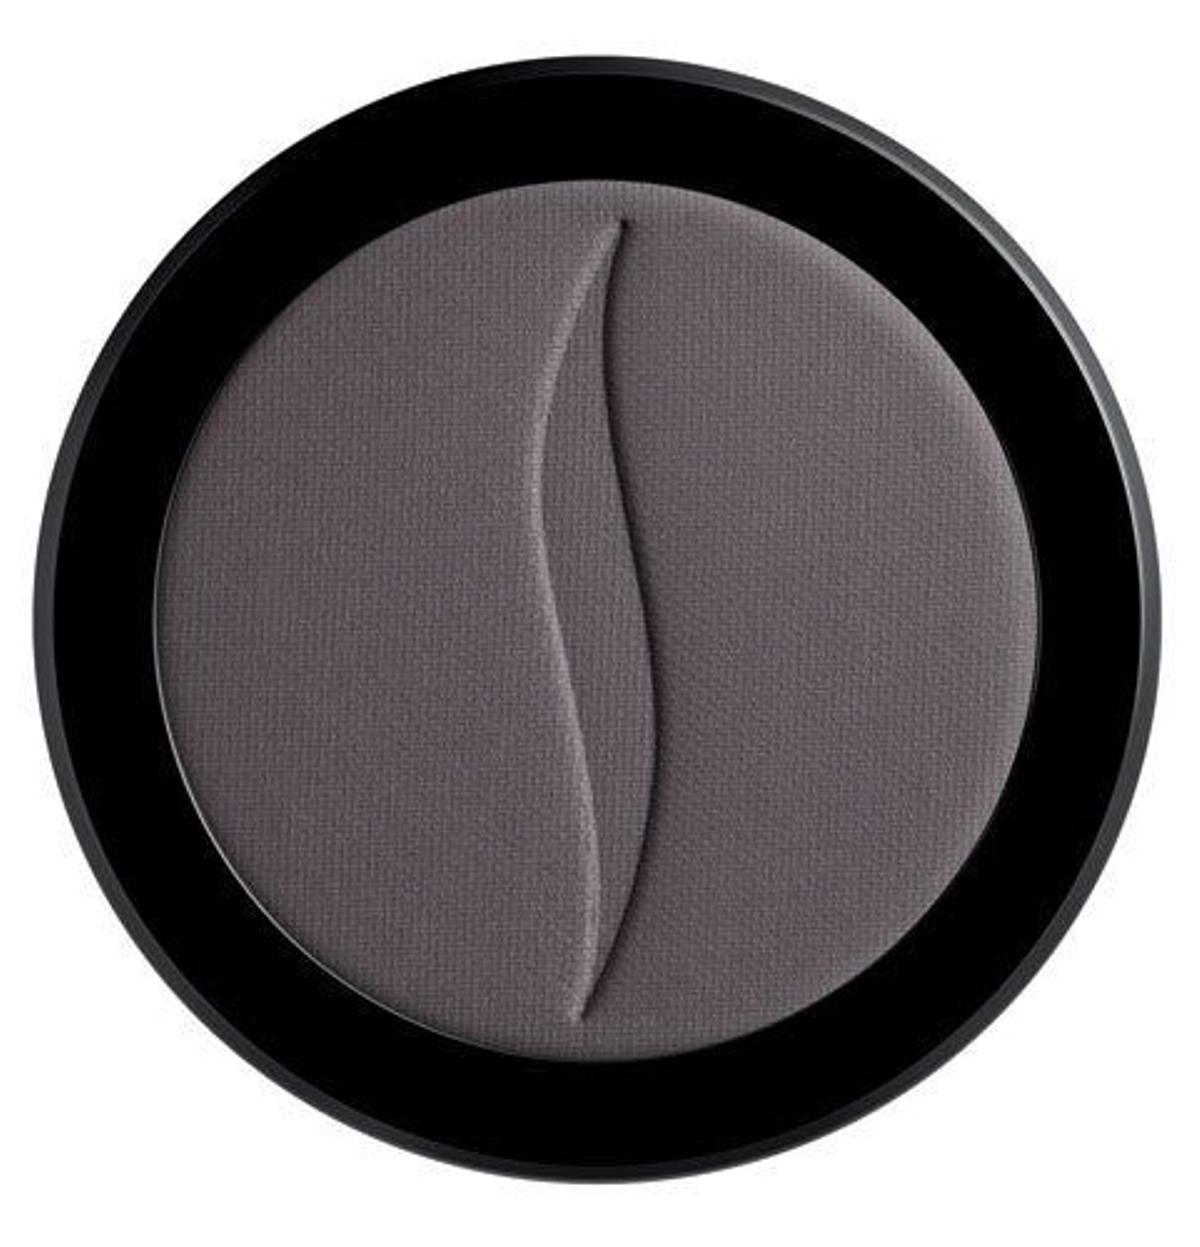 Sombra de ojos negra de Sephora. 11,90€